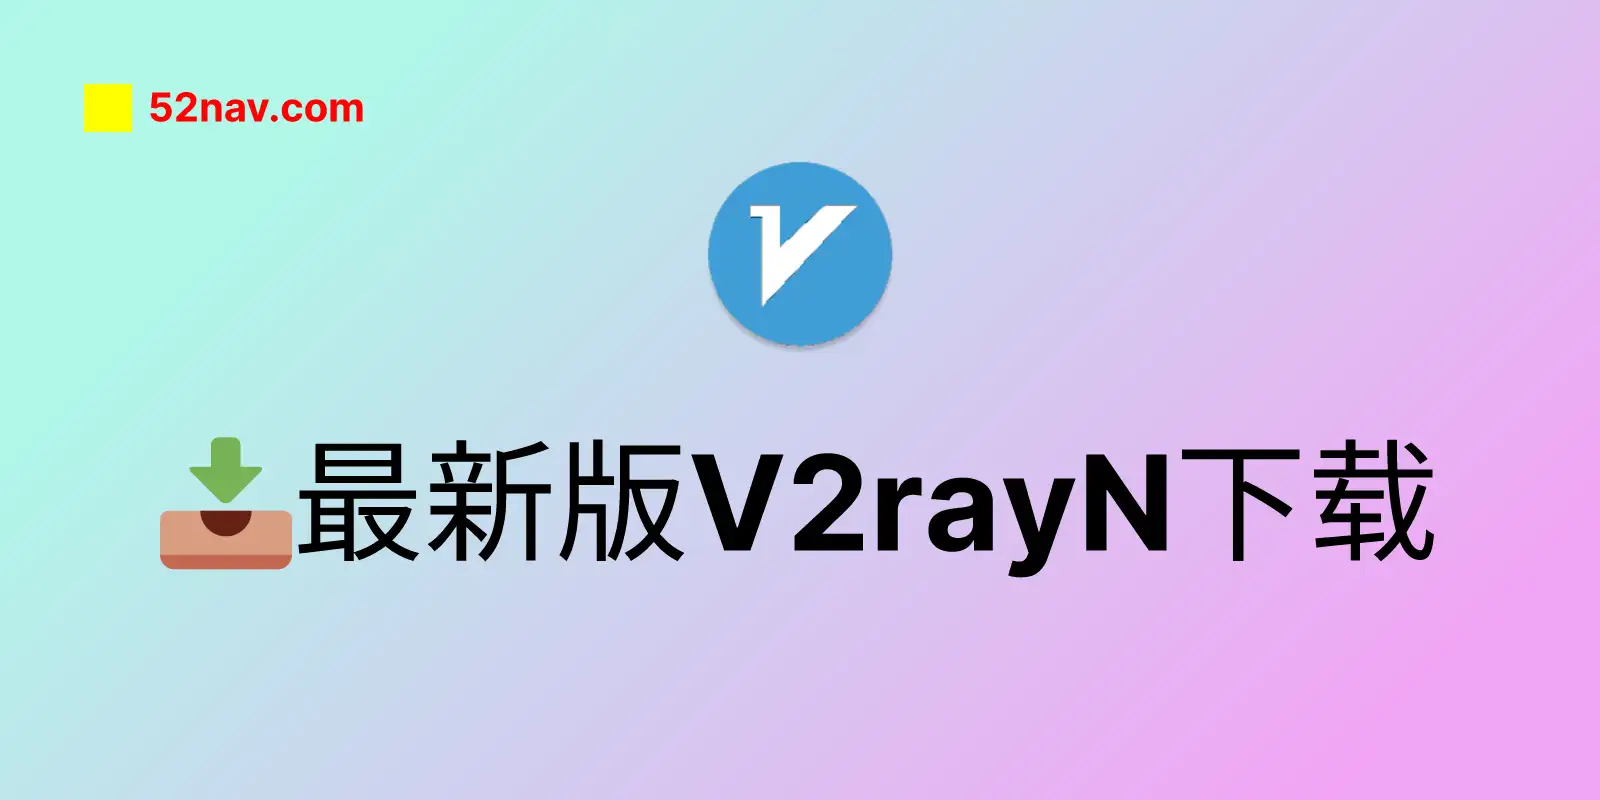 最新版 v2rayN 下载📥，更新详情